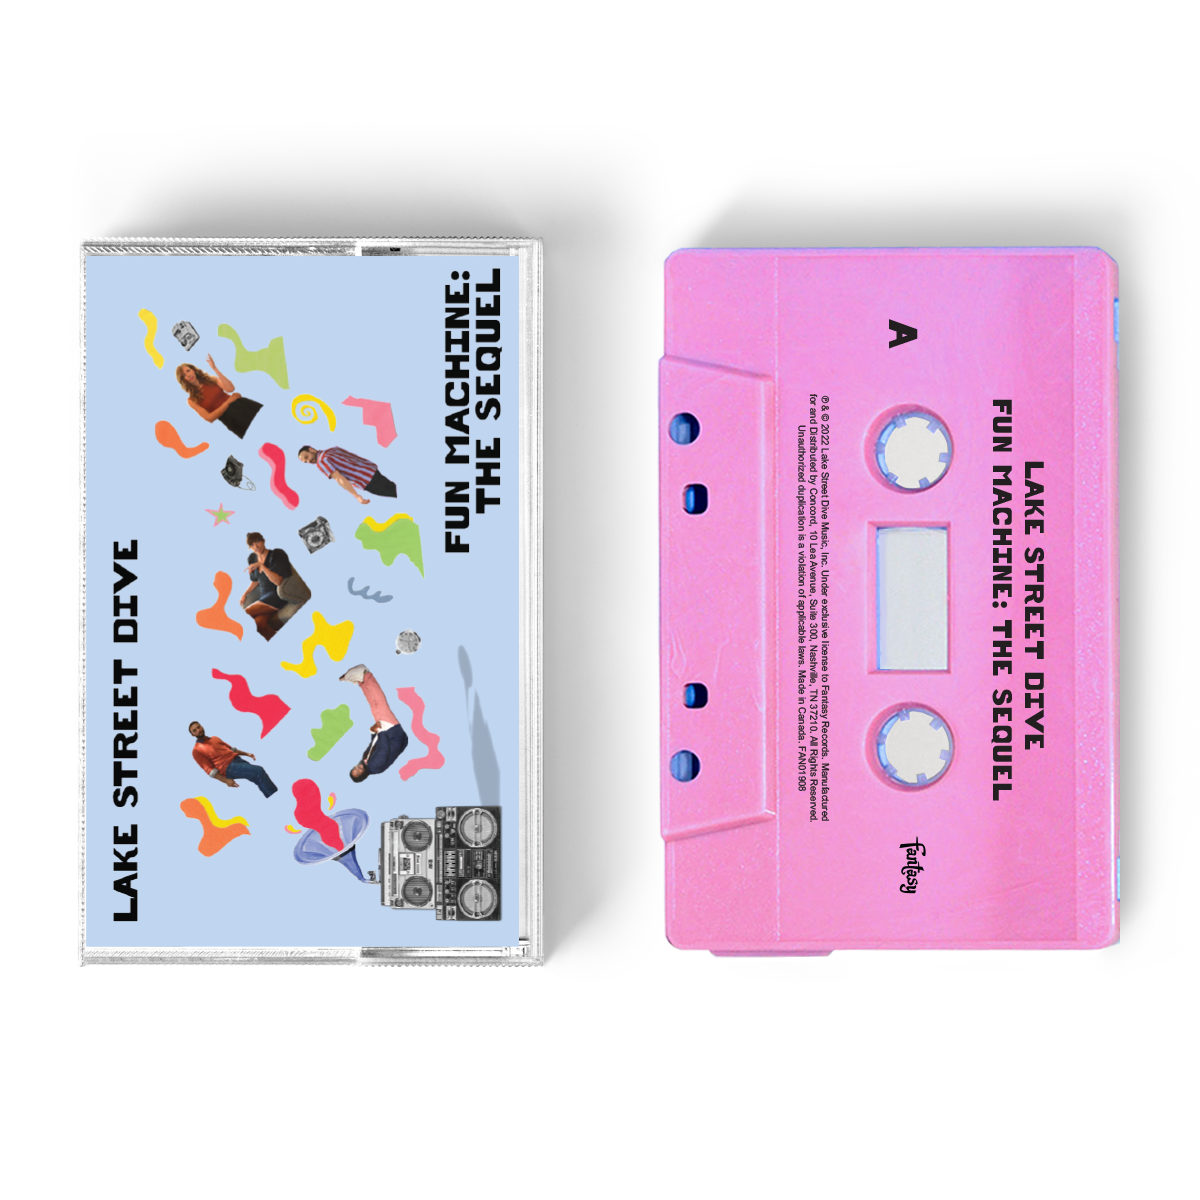 Fun Machine: The Sequel Cassette EP